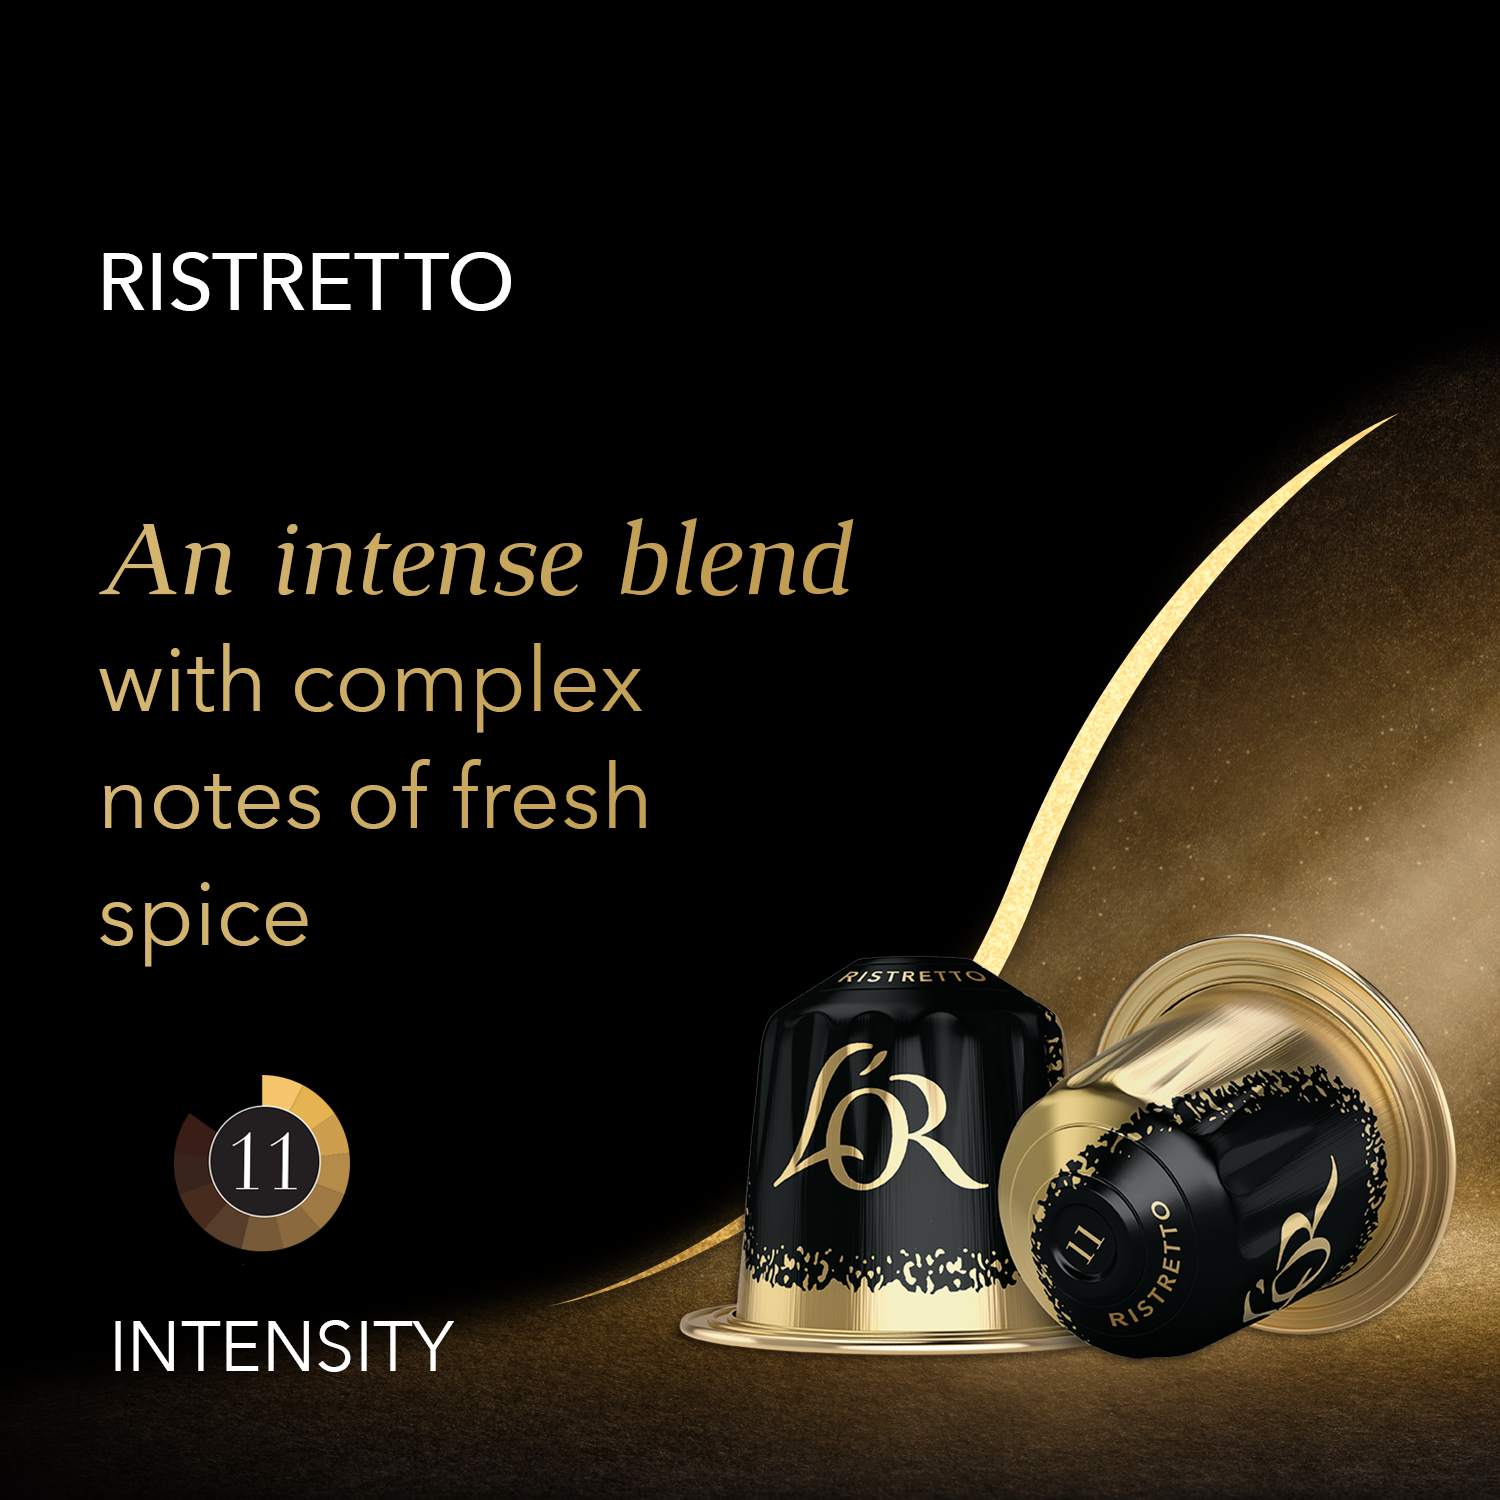 100 Capsulas Nespresso Profesional Compatibles - Ristretto